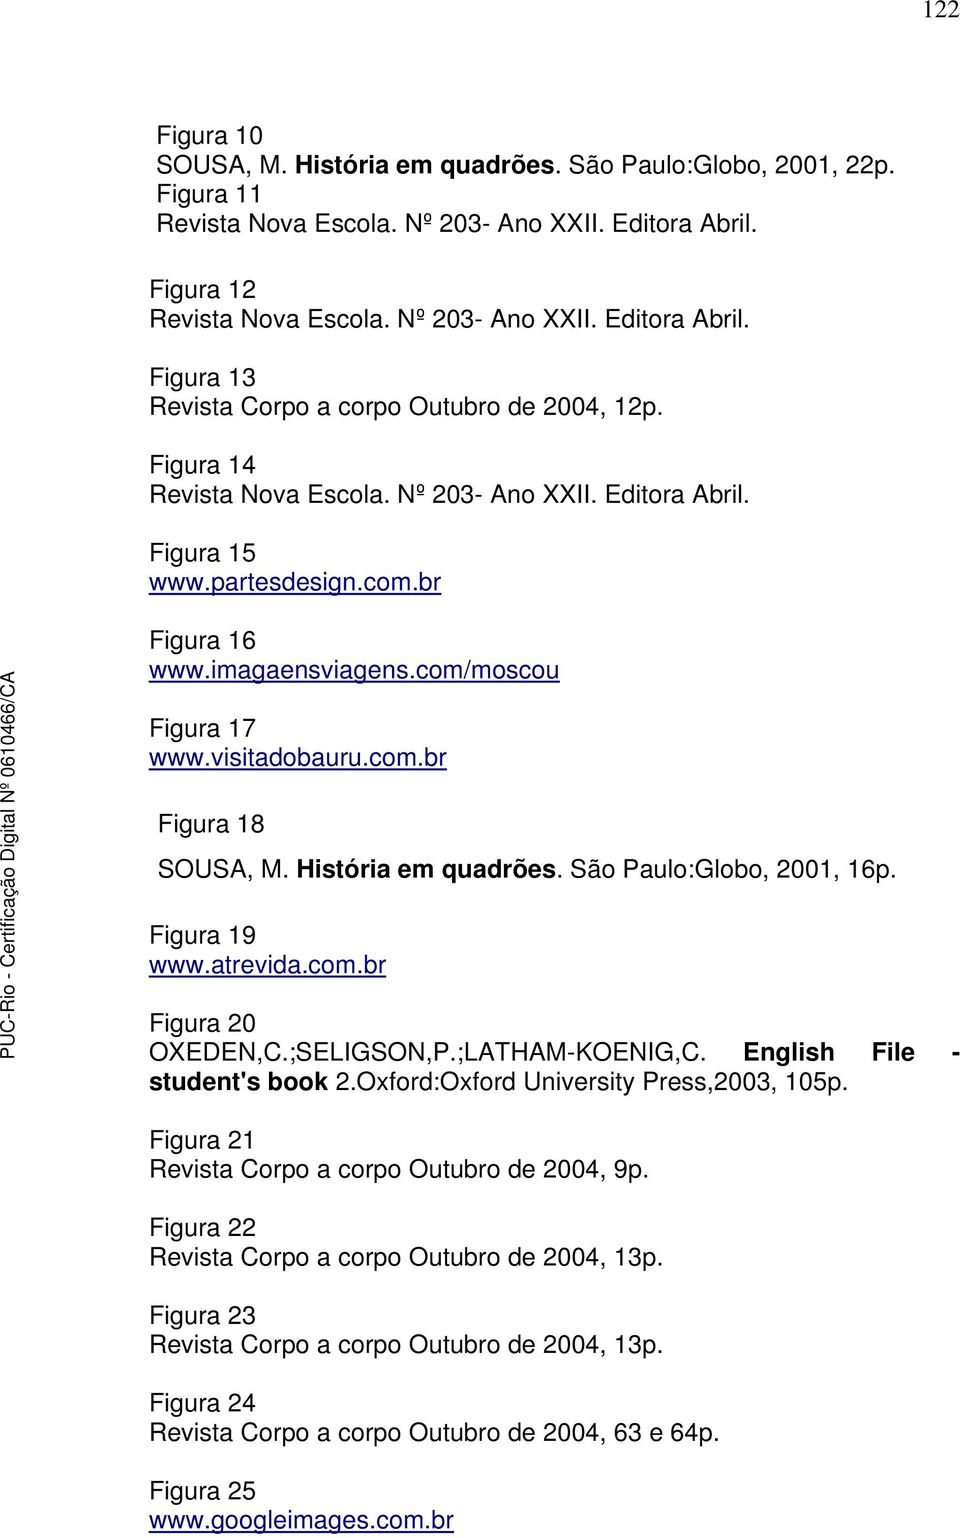 História em quadrões. São Paulo:Globo, 2001, 16p. Figura 19 www.atrevida.com.br Figura 20 OXEDEN,C.;SELIGSON,P.;LATHAM-KOENIG,C. English File - student's book 2.